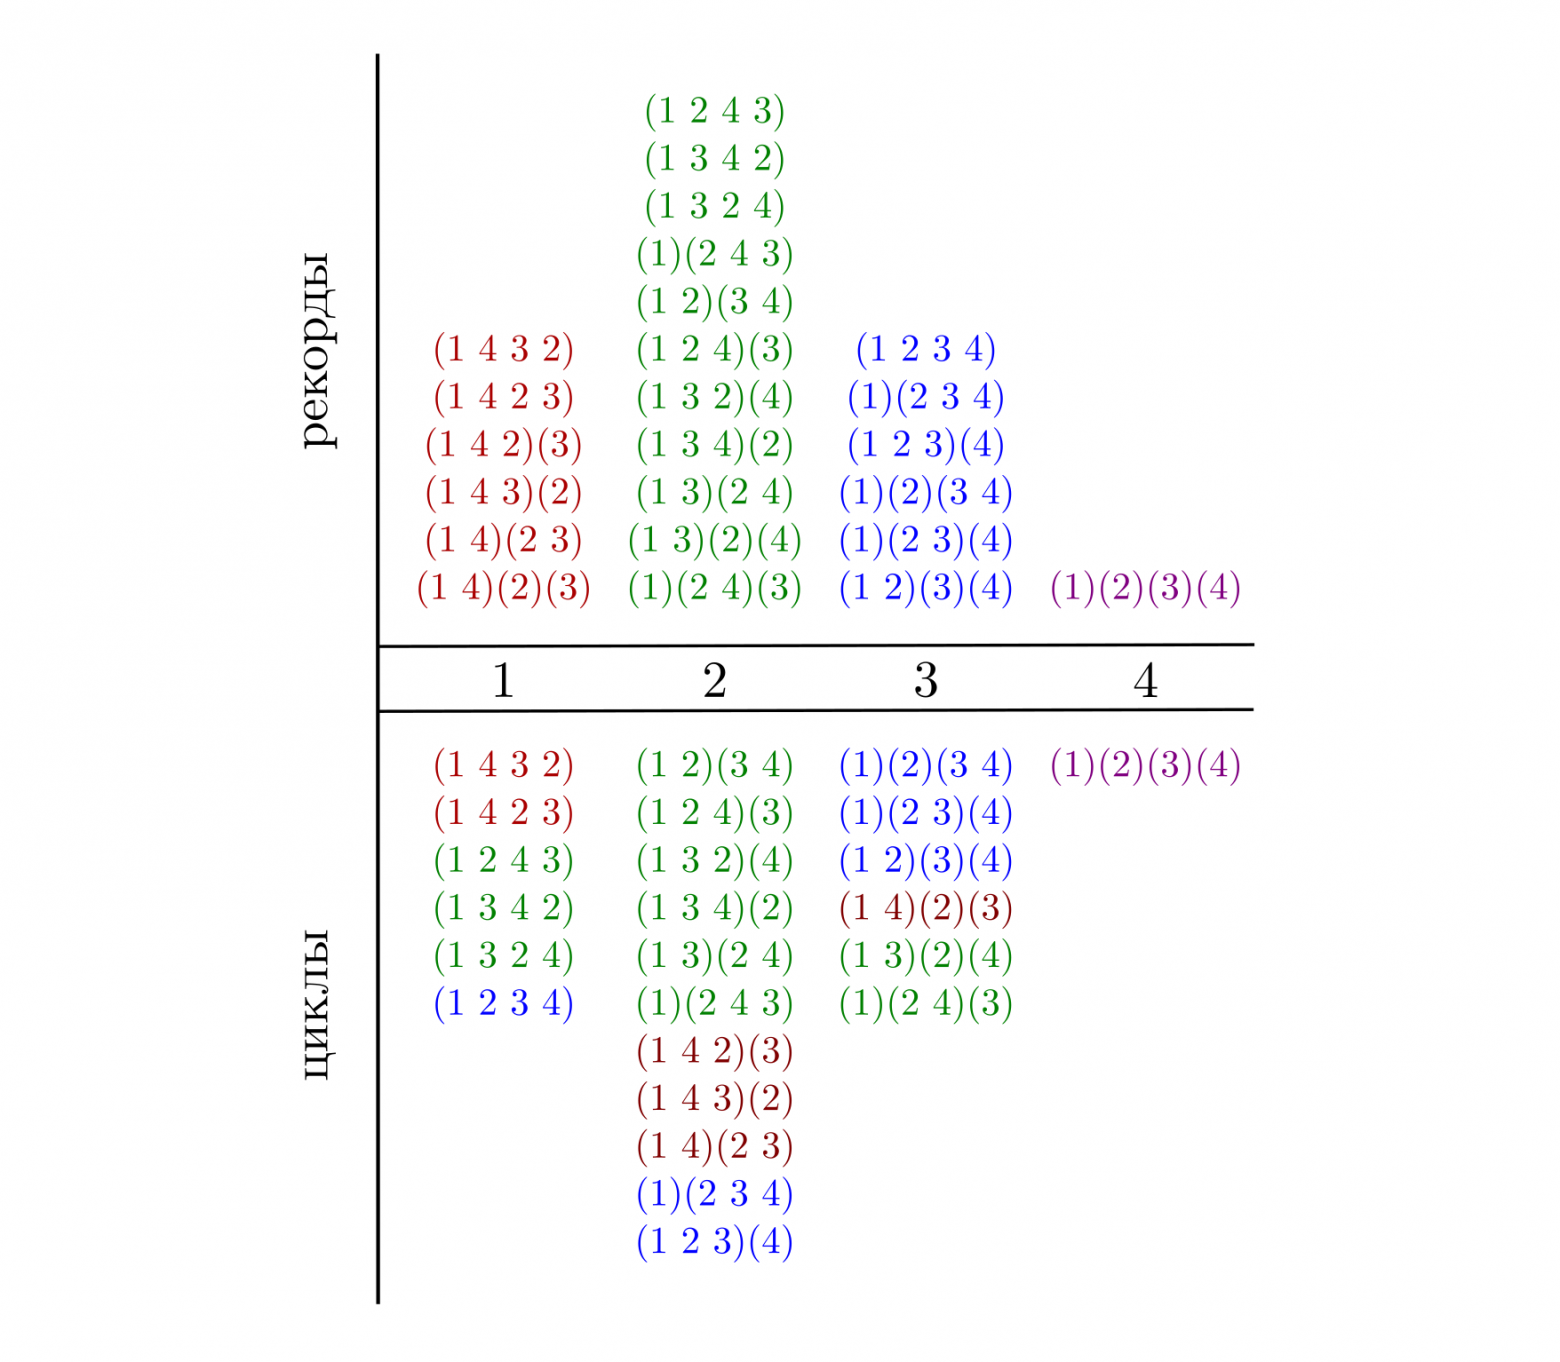 Цветом обозначены элементы классов эквивалентности по количеству рекордов. Перестановки здесь приведены в виде композиции циклов.